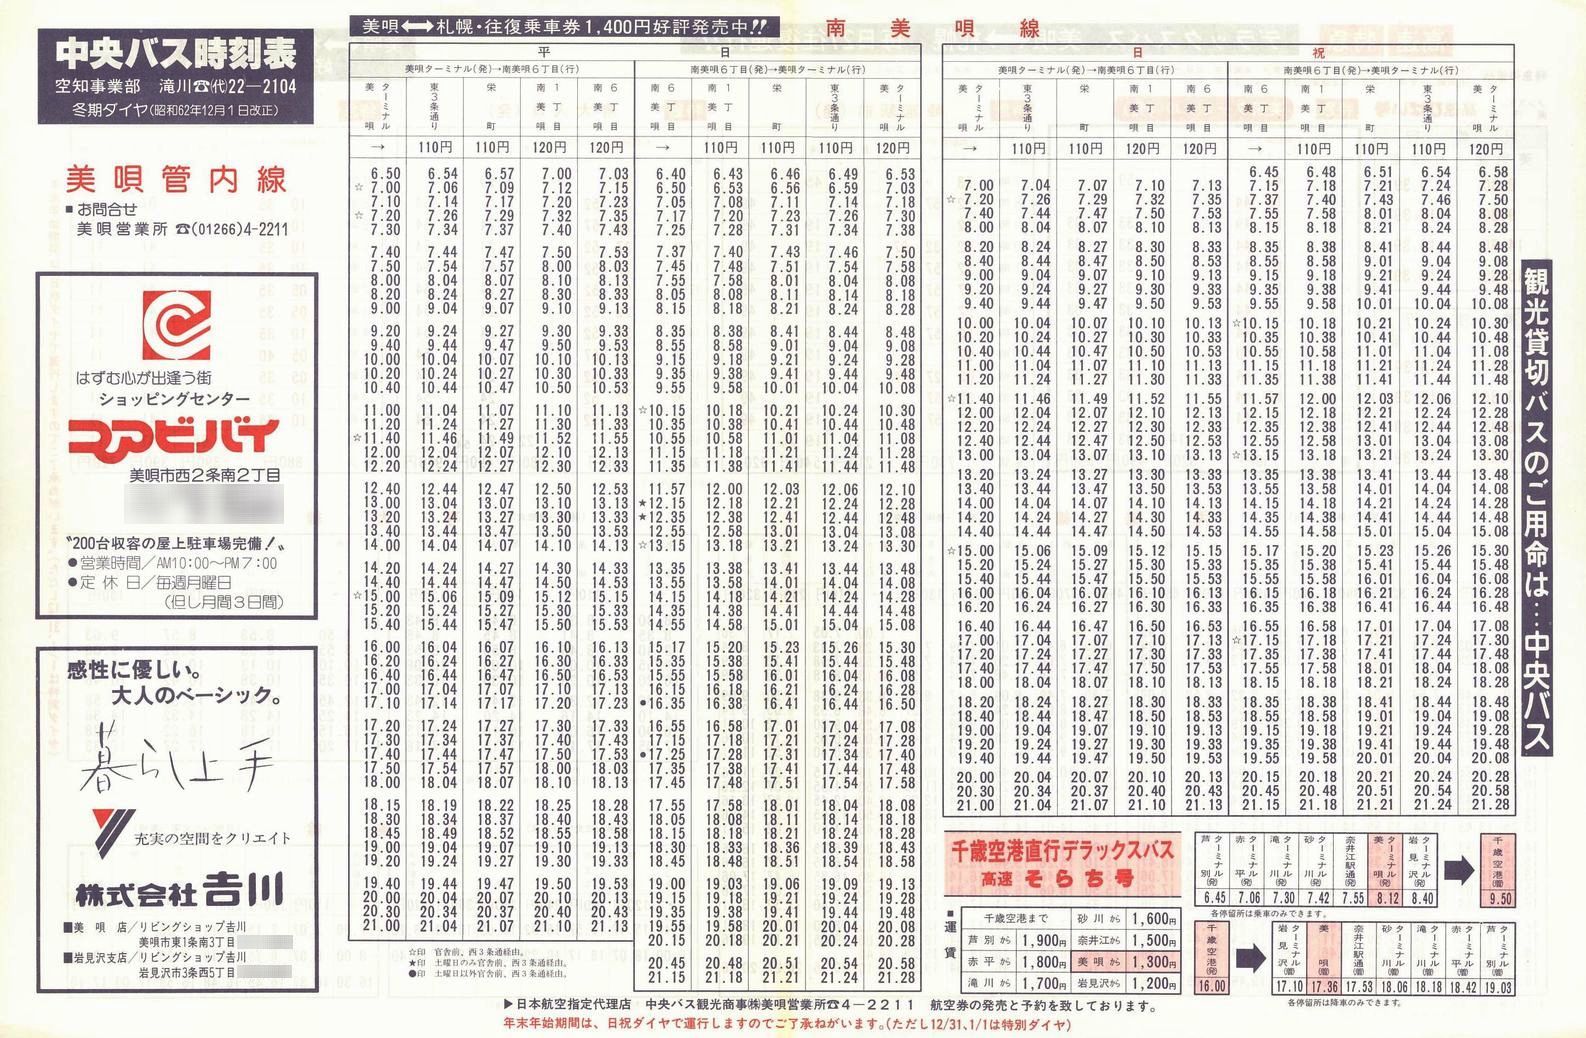 1987-12-01改正_北海道中央バス(空知)_美唄管内線時刻表表面